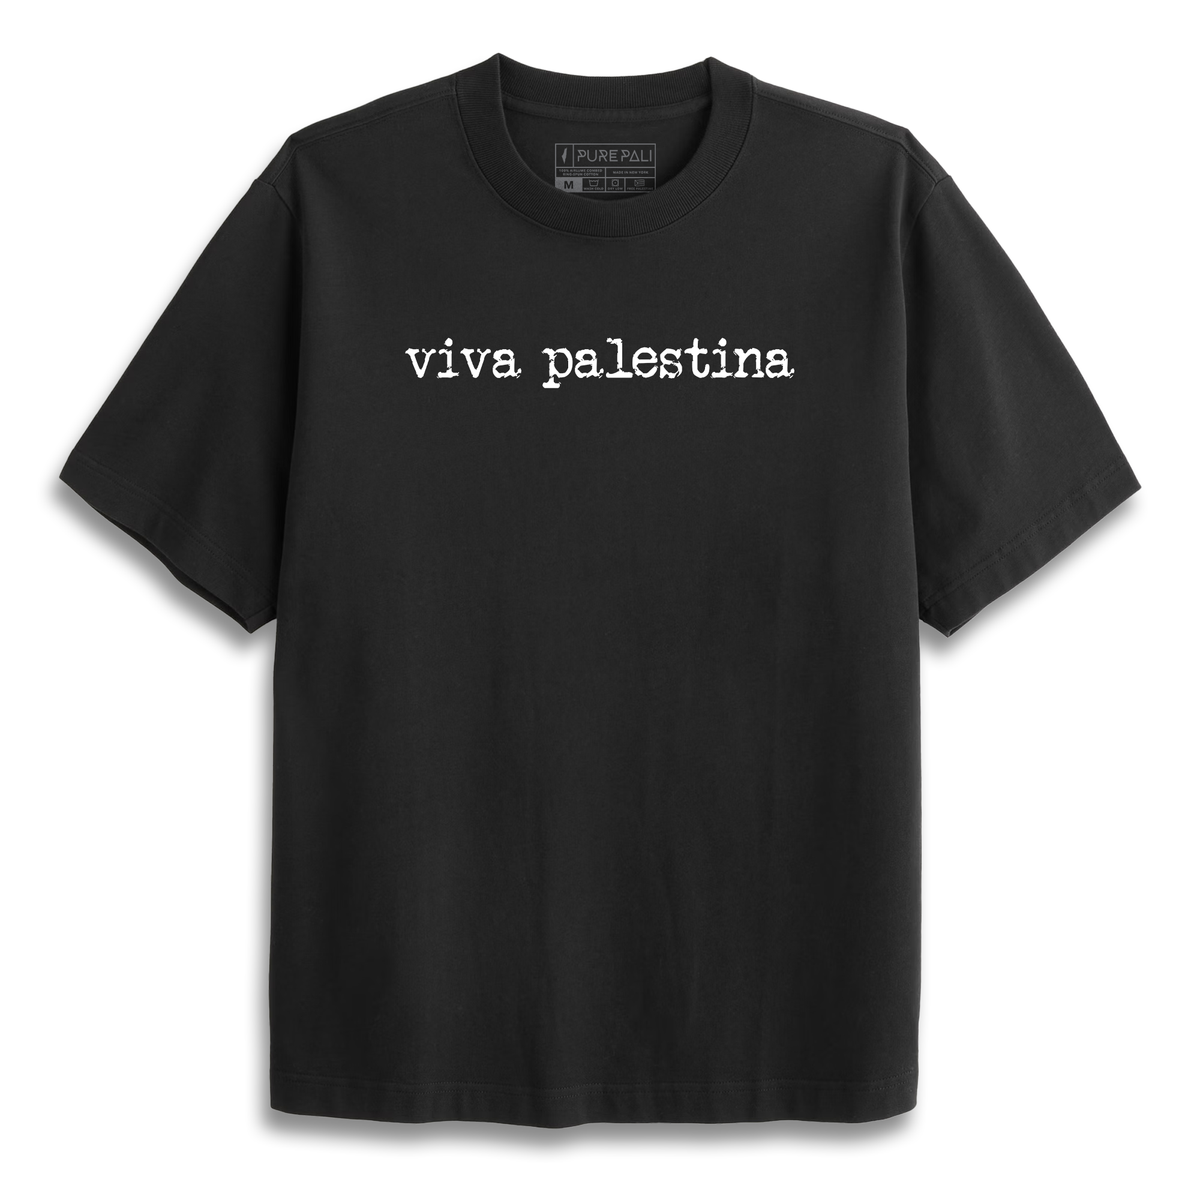 Viva Palestina Tee - PurePali